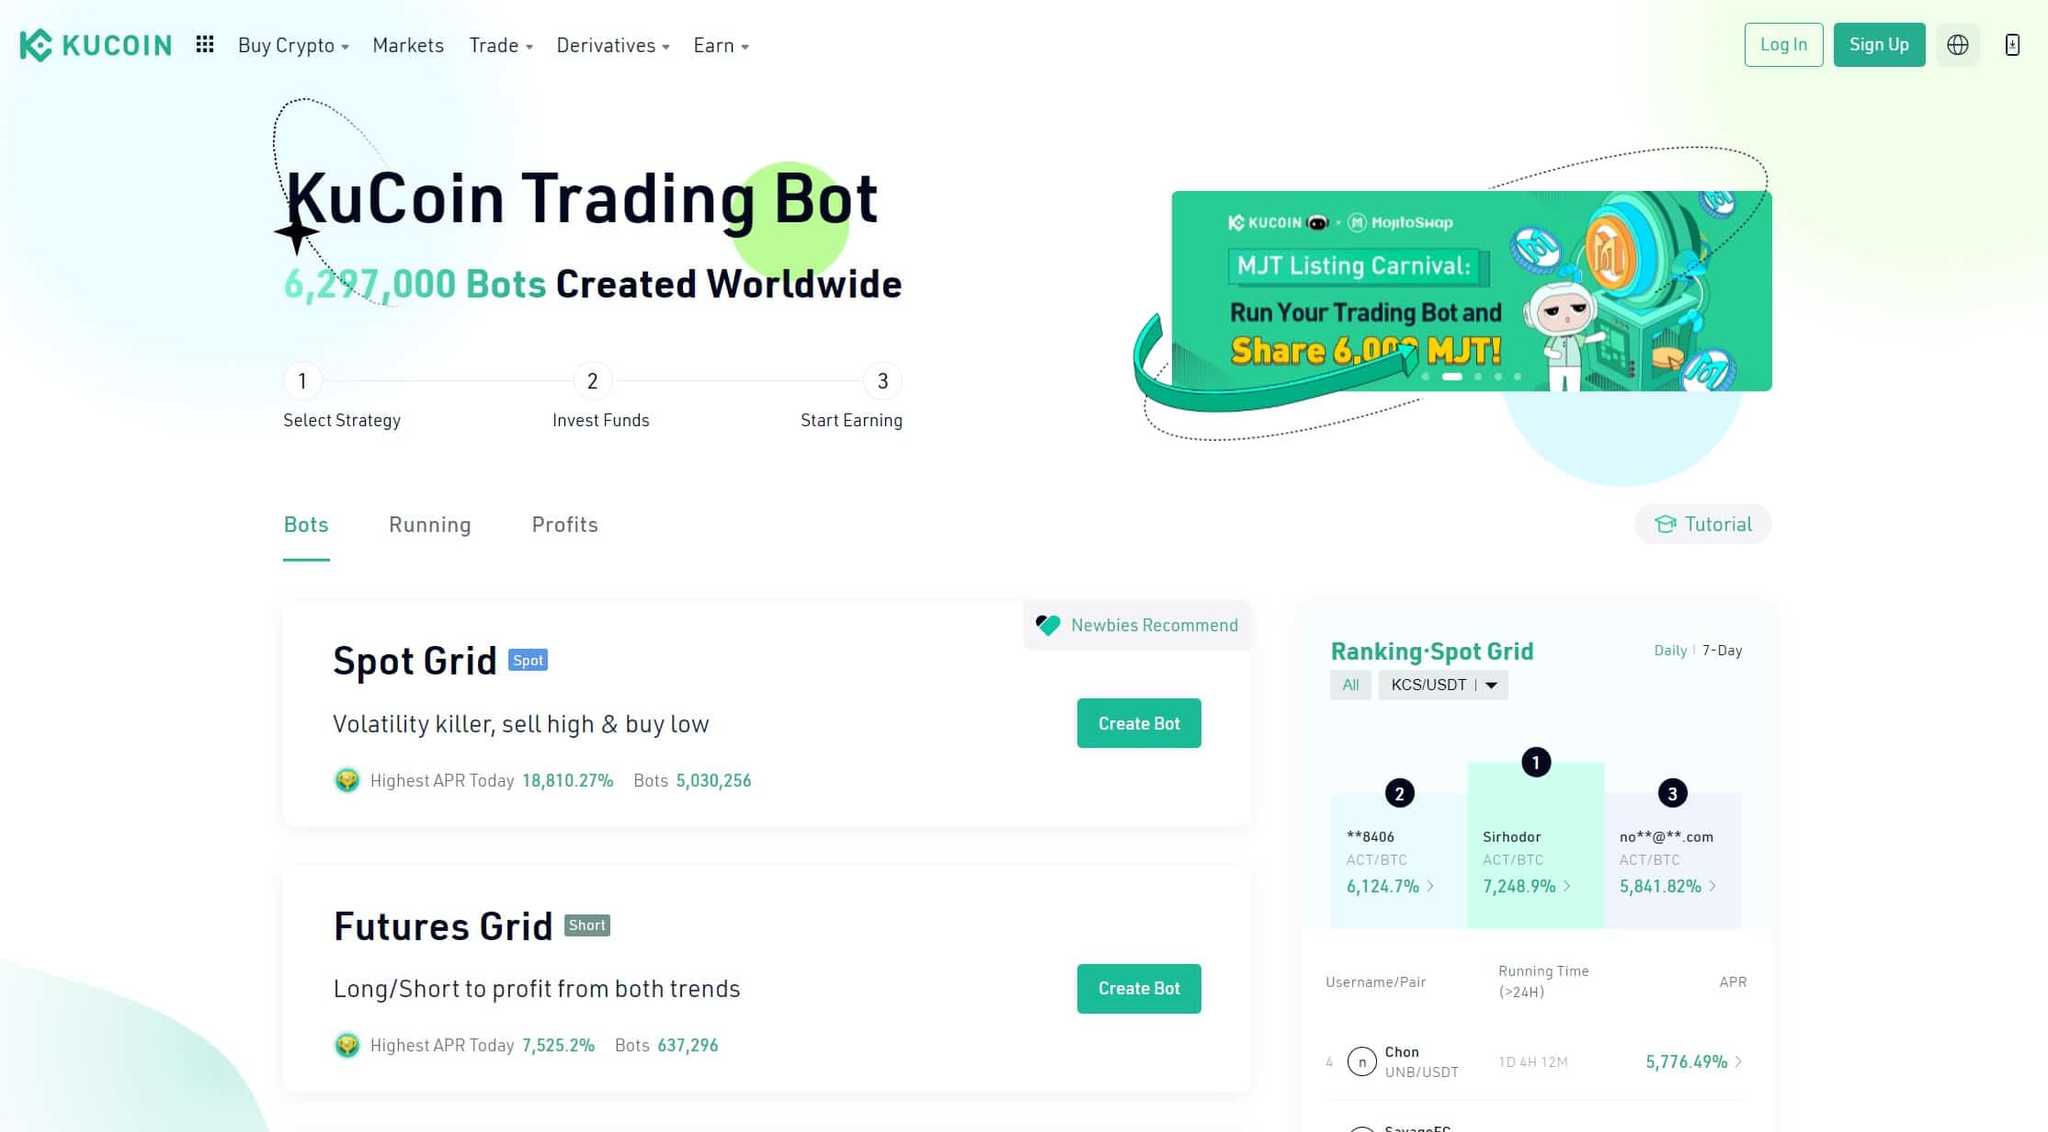 KuCoin Trading Bots